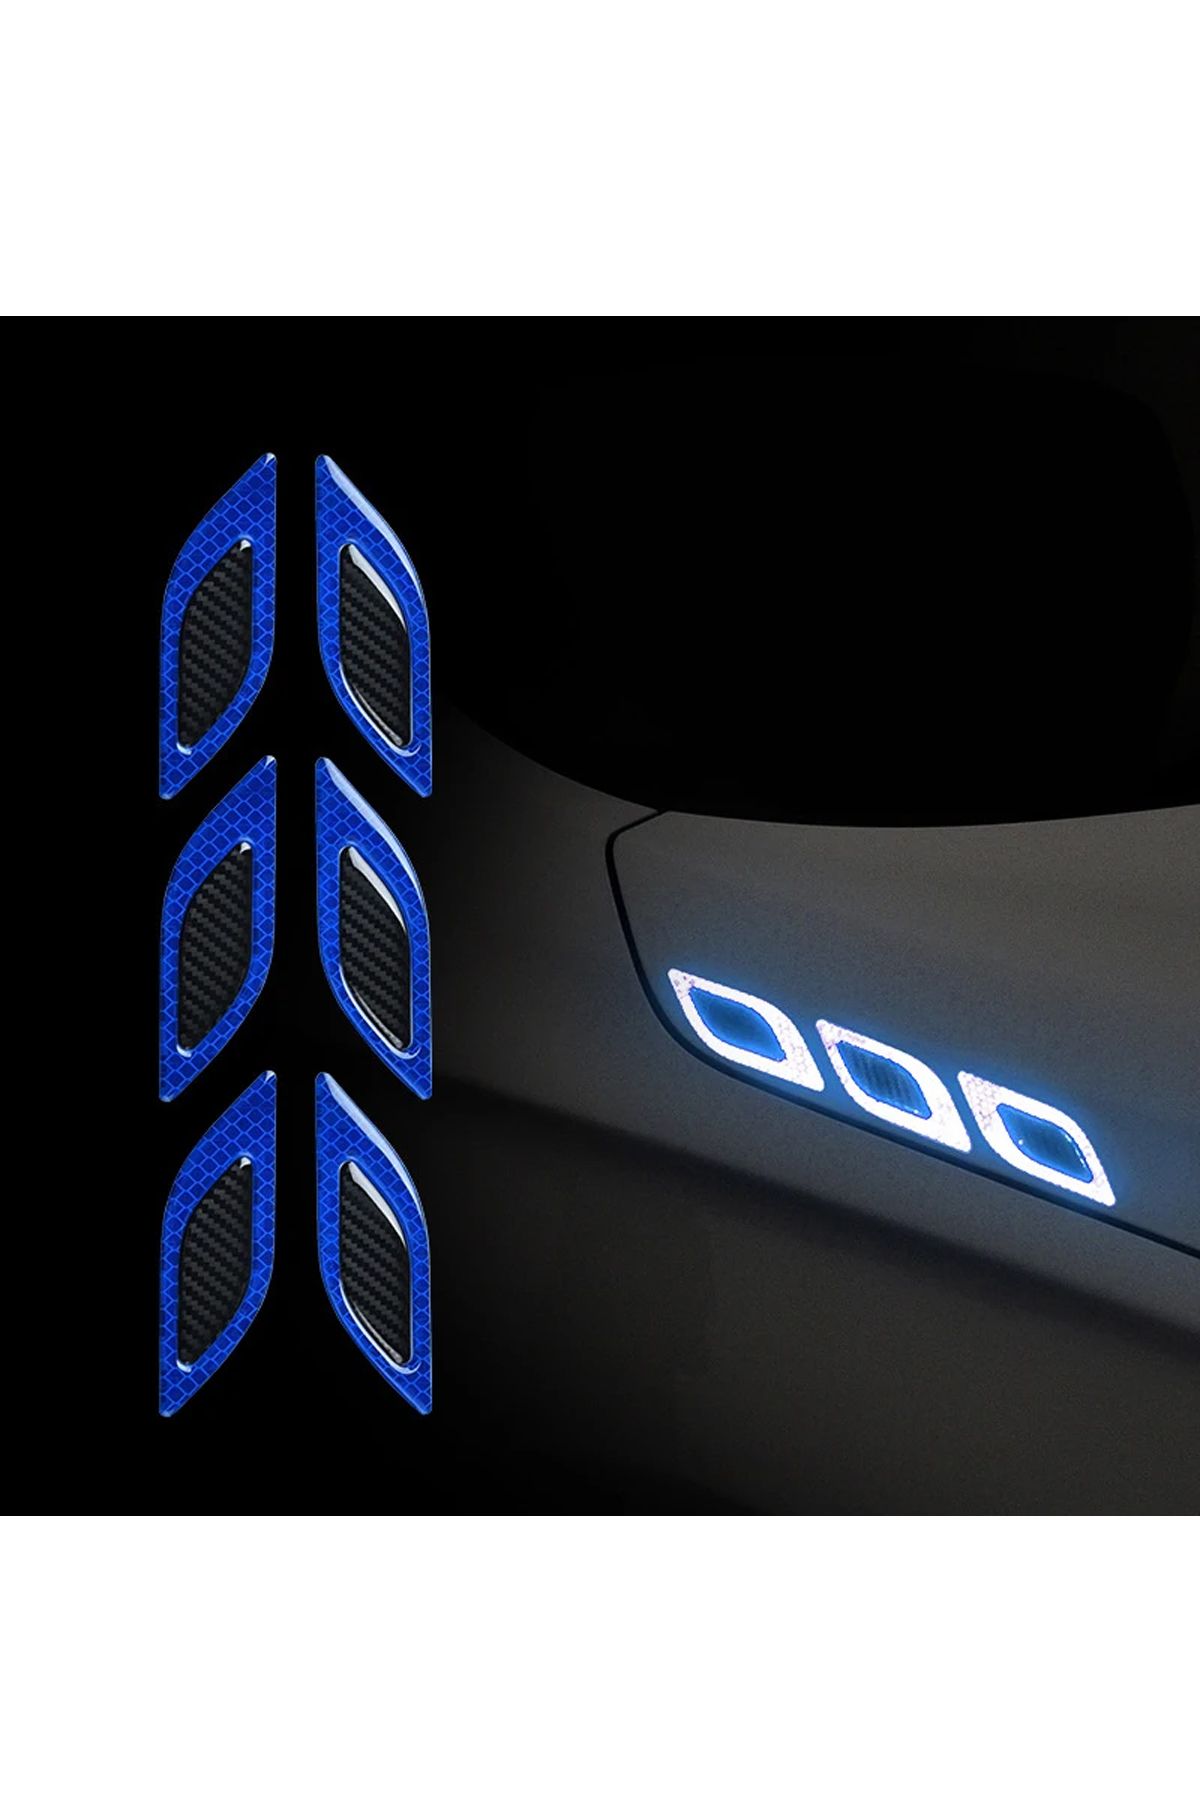 GARDENAUTO Araba Motosiklet Reflektörlü Şerit Reflektif Araç Kaput Sticker Oto Yansıtıcı Ikaz bandı